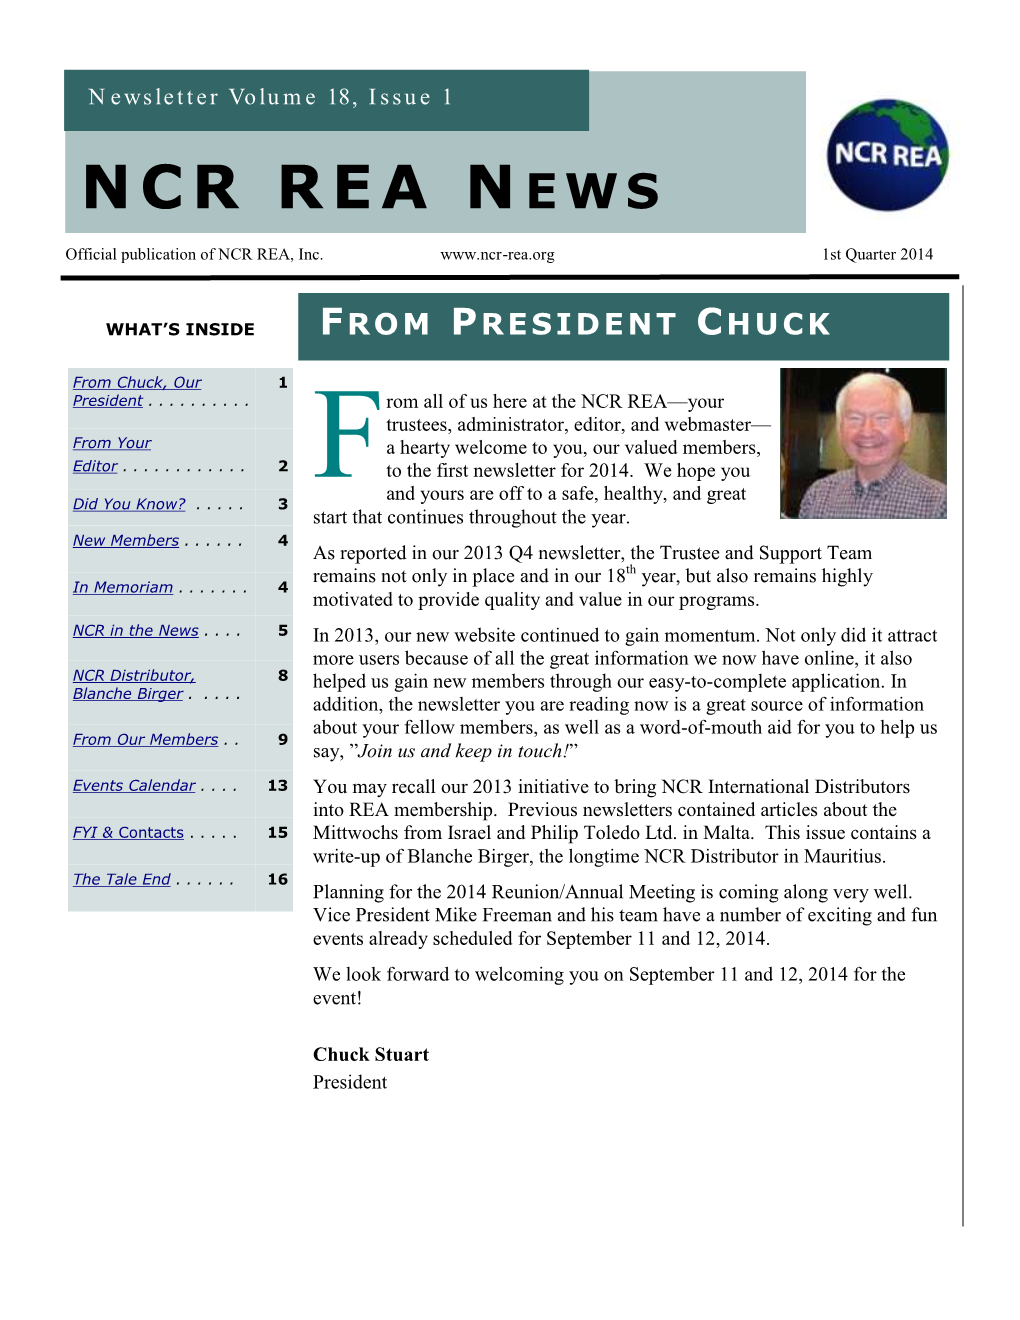 NCR REA News P a G E 2